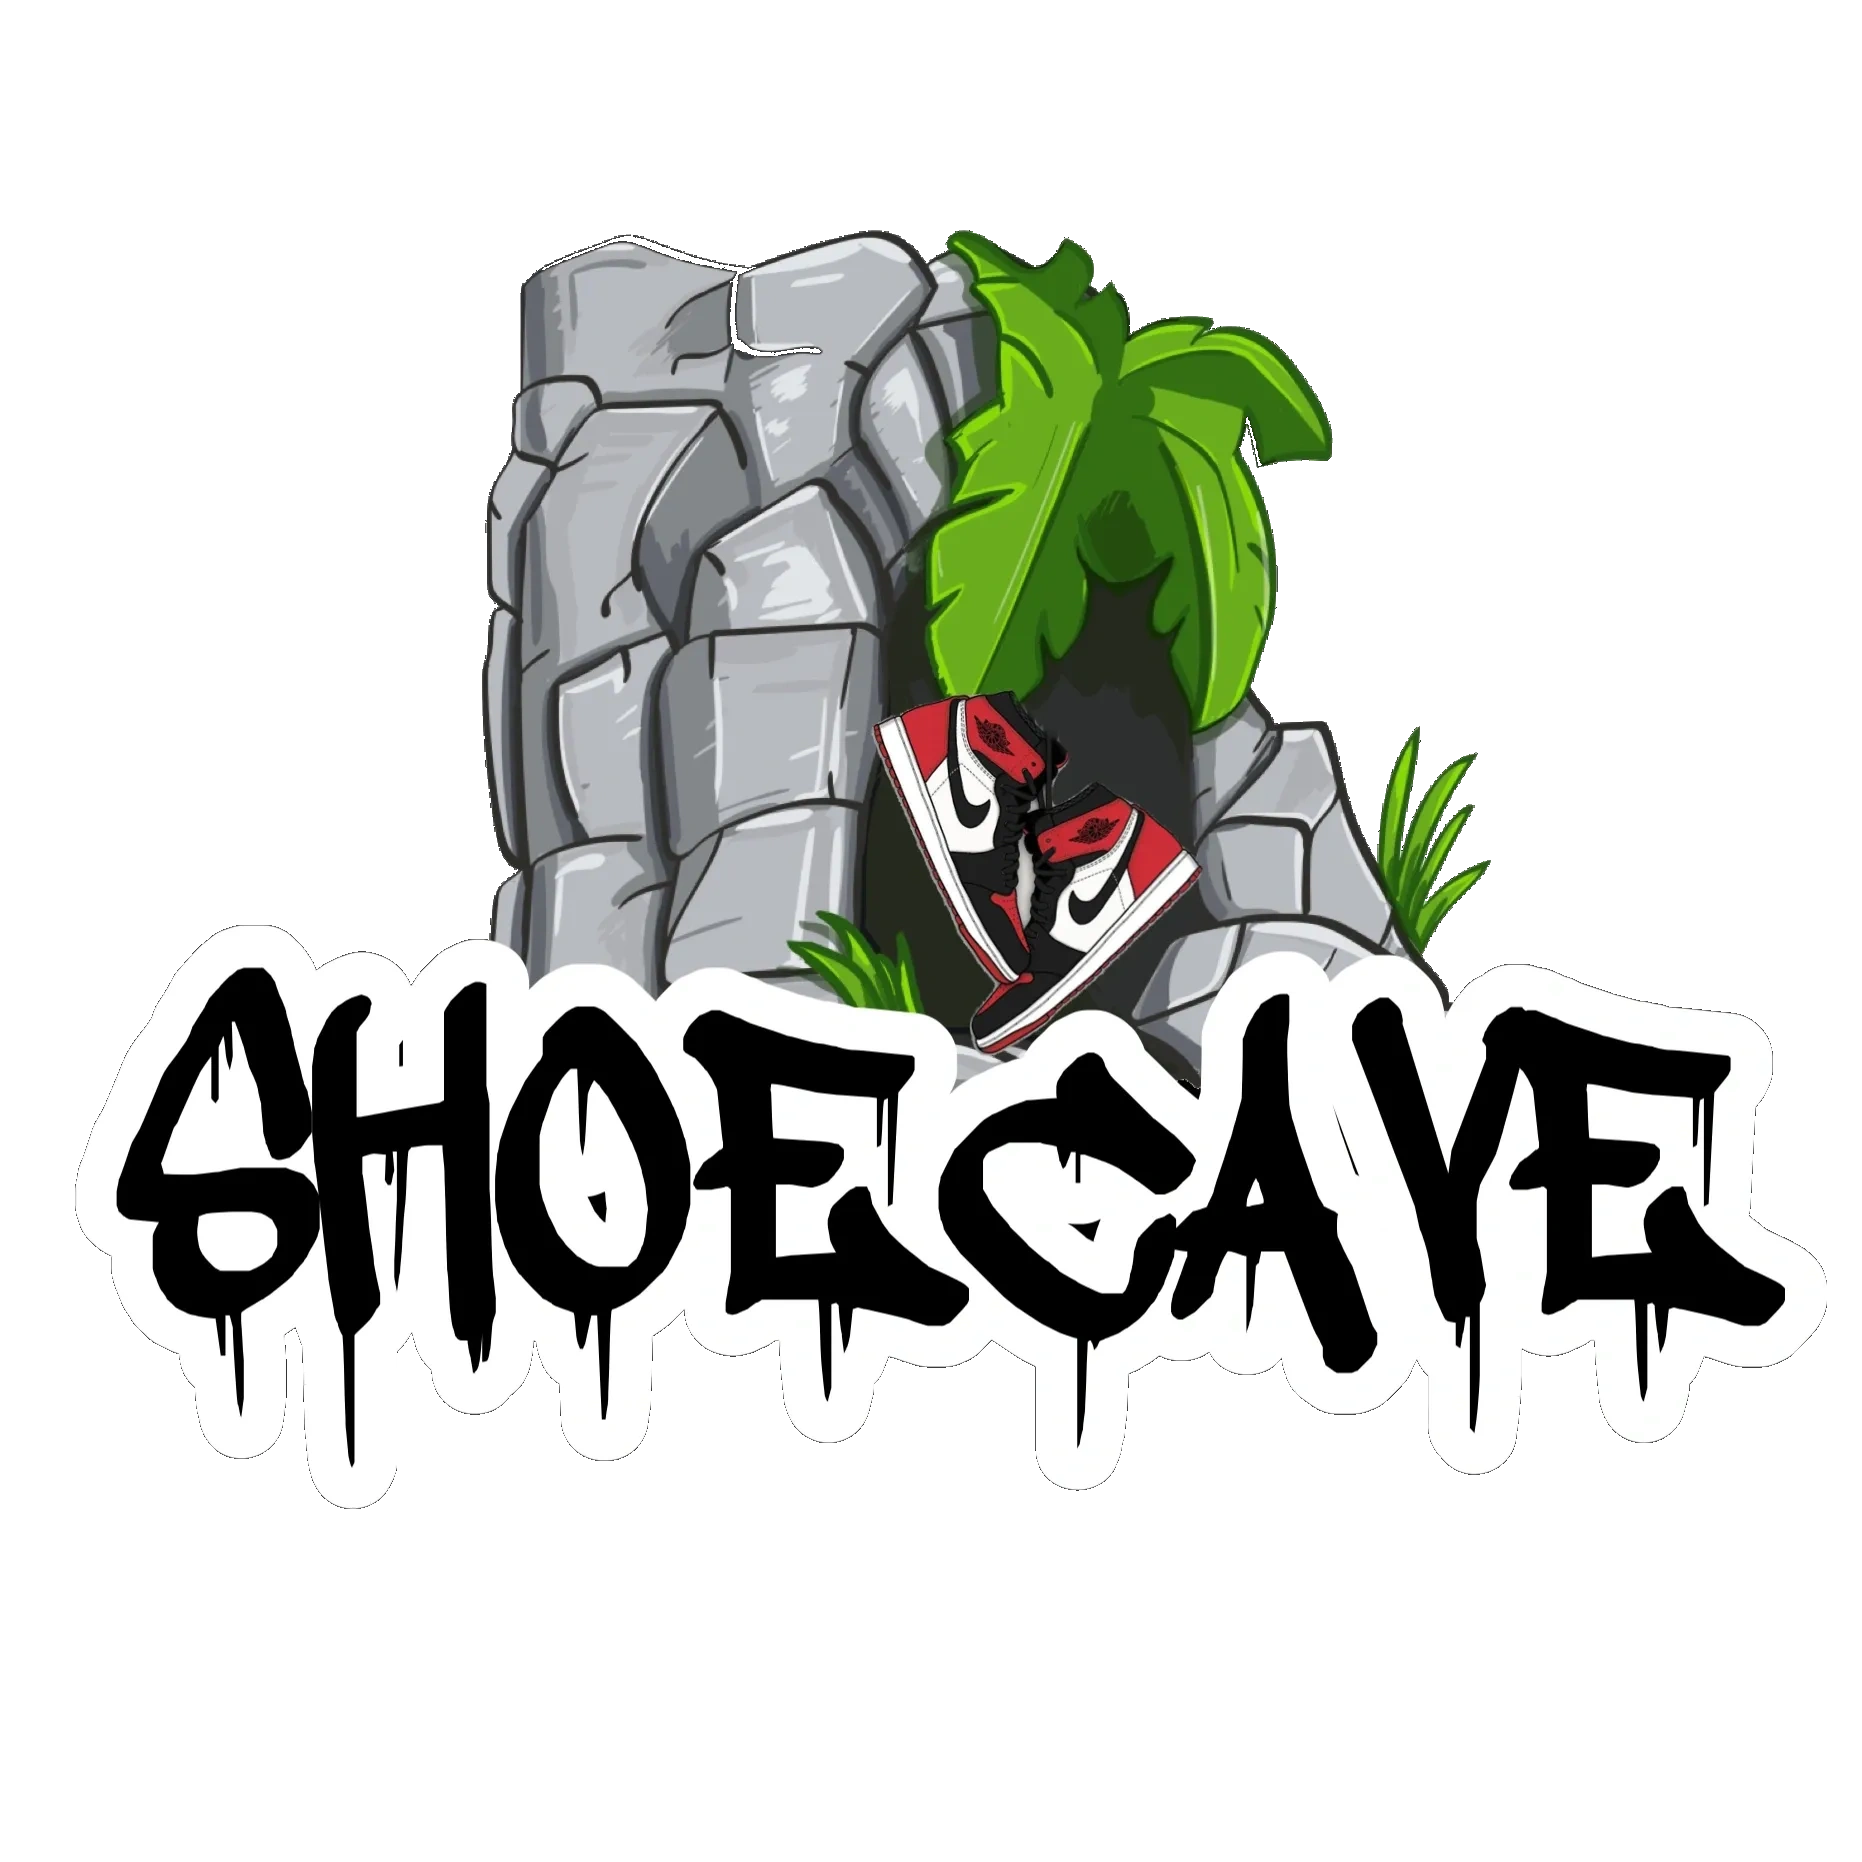 Shoecave